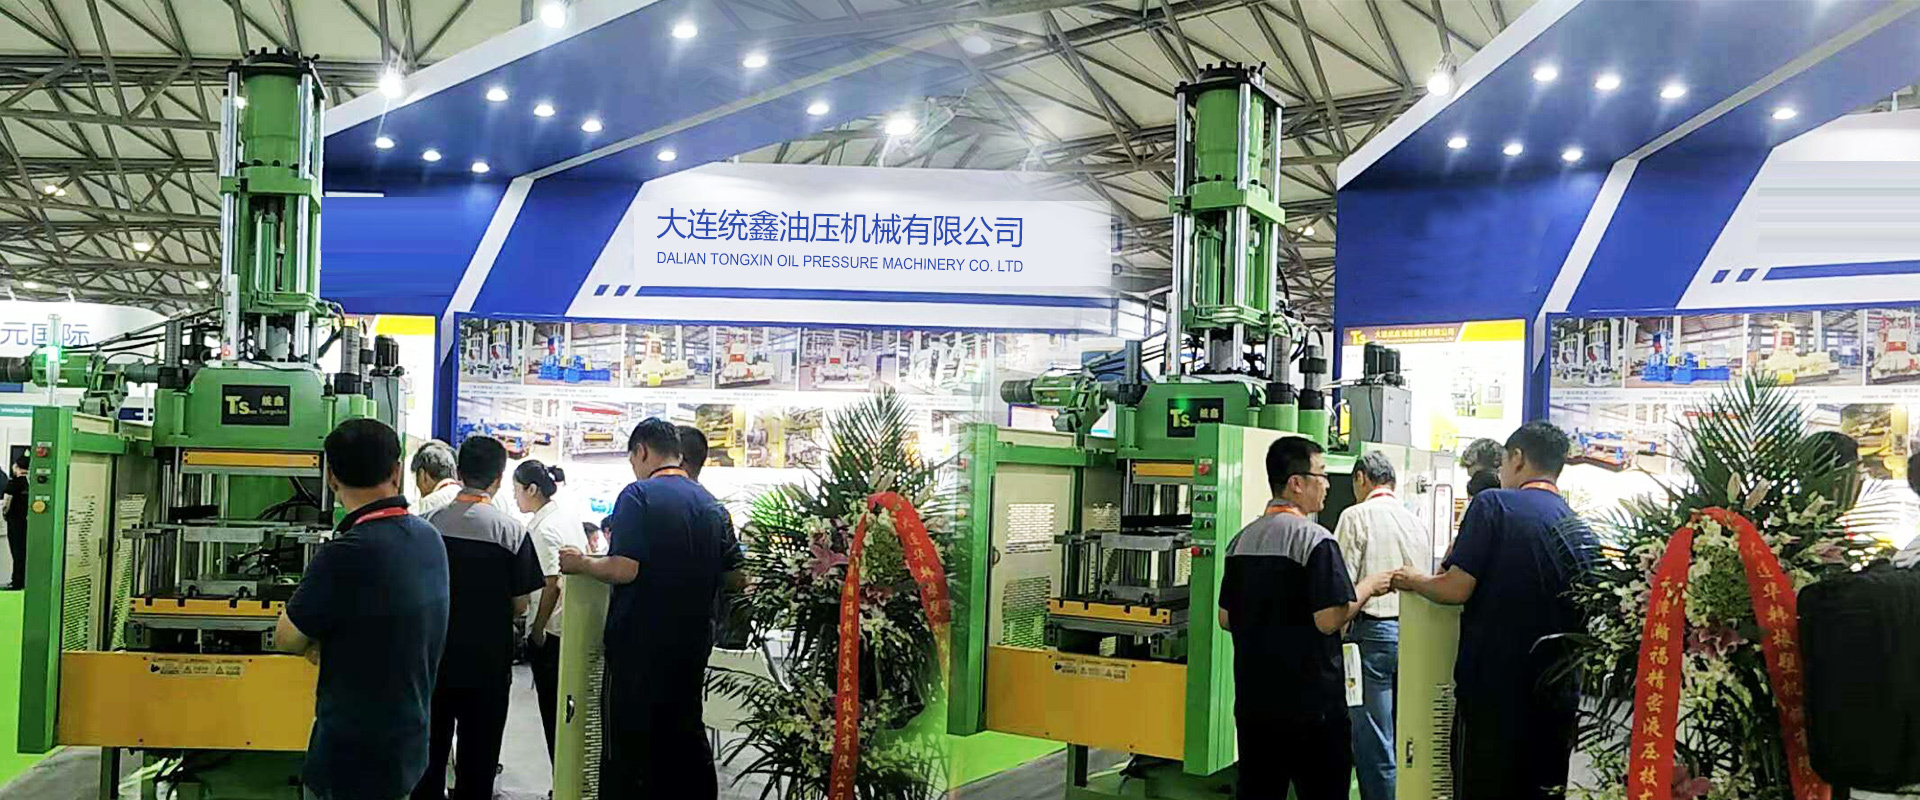 2019年中国国际橡胶技术(青岛)展览会